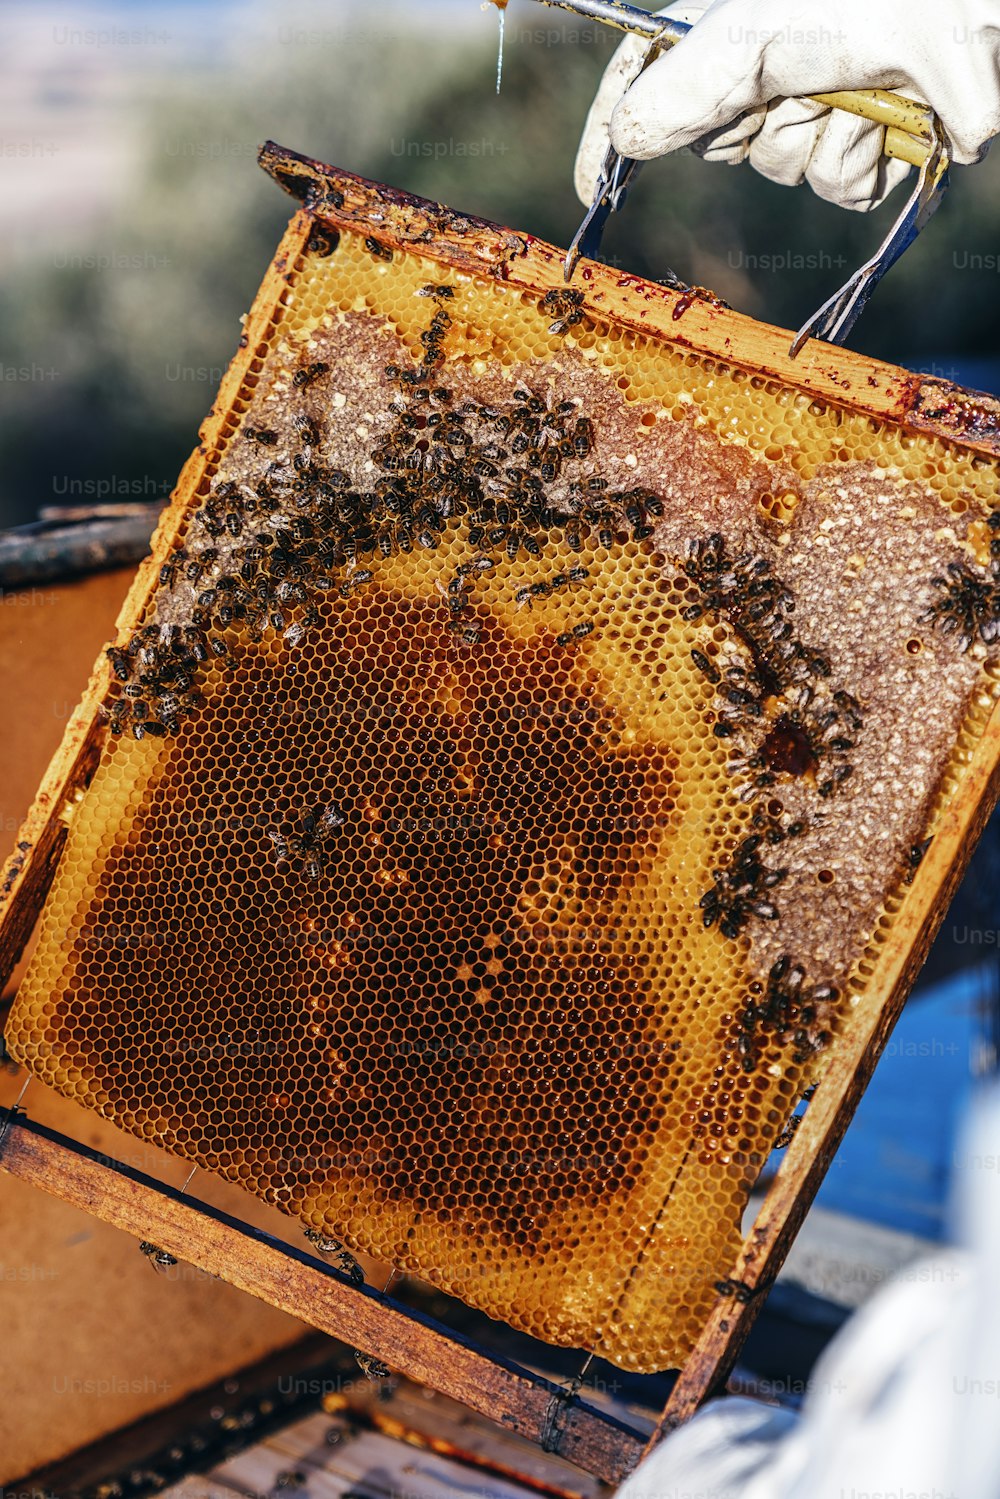 100+ Imágenes de panal de abeja  Descargar imágenes gratis en Unsplash